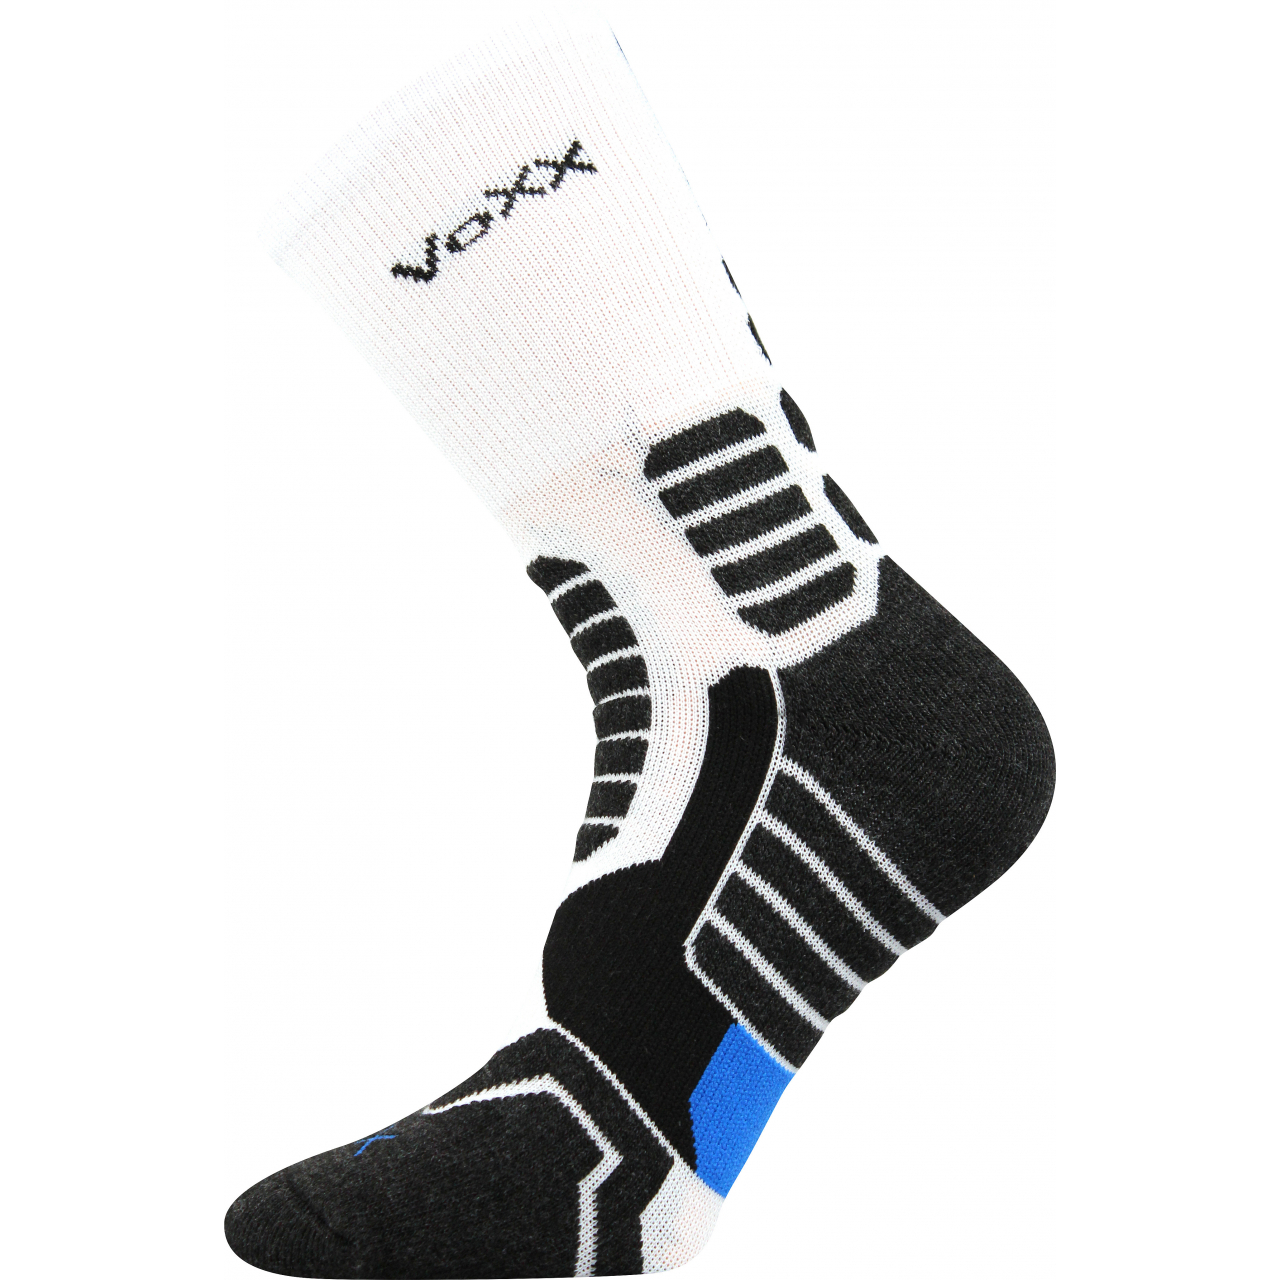 Ponožky kompresní unisex Voxx Ronin - bílé-černé, 35-38